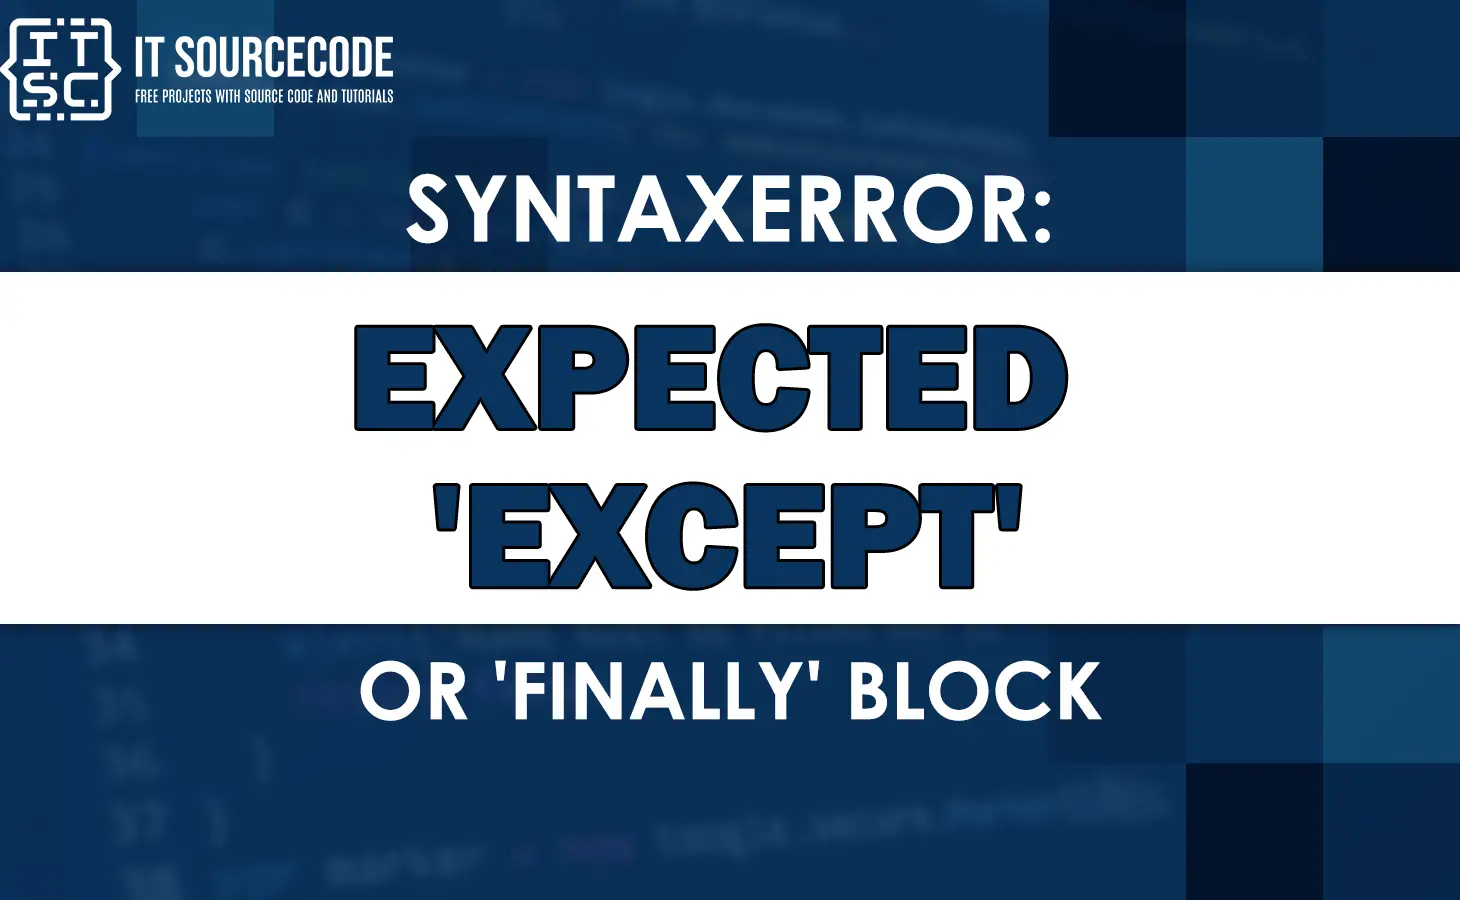 Syntaxerror expected 'except' or 'finally' block